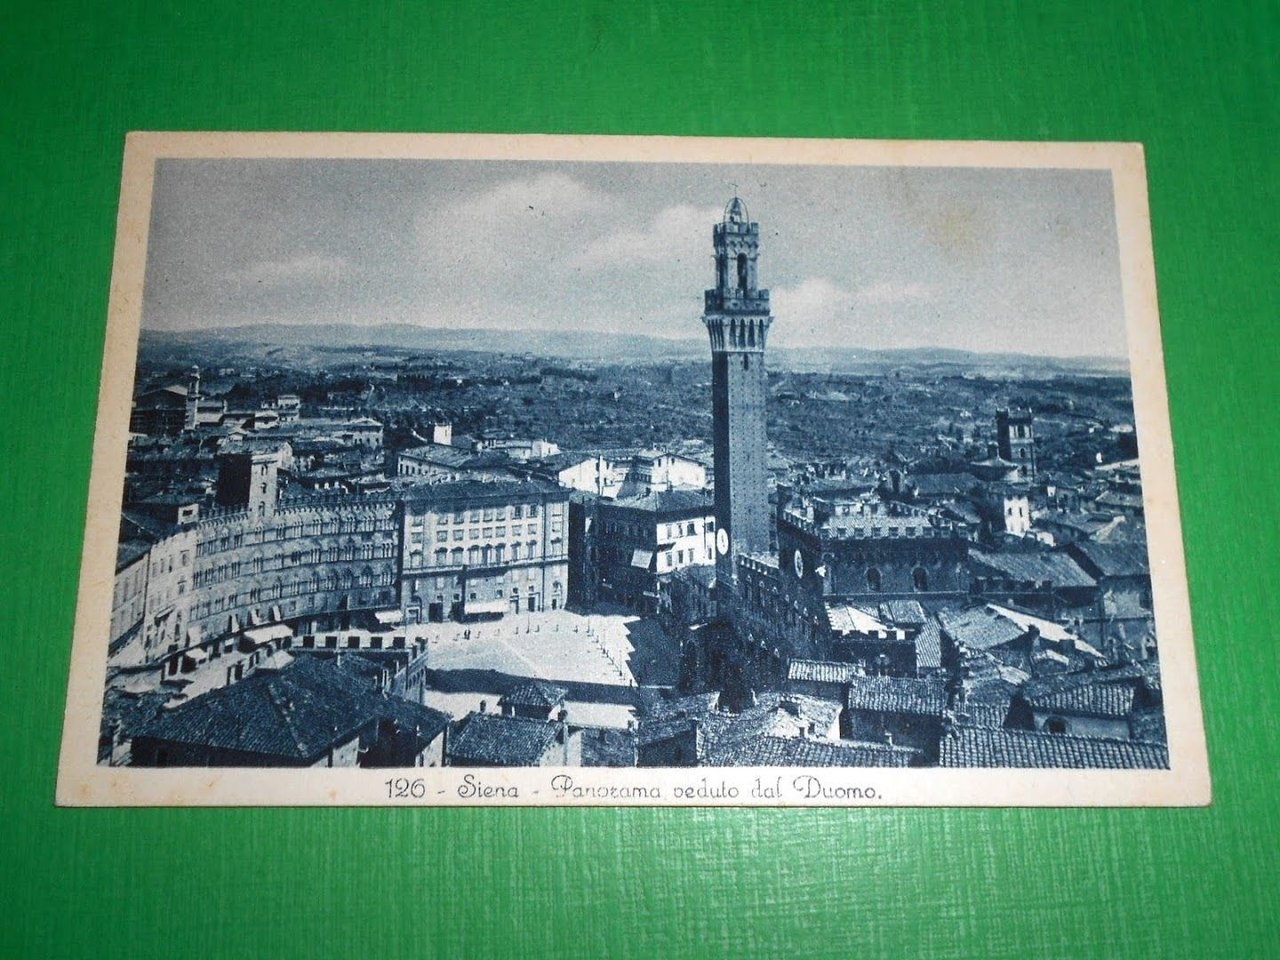 Cartolina Siena - Panorama veduto dal Duomo 1935 ca.